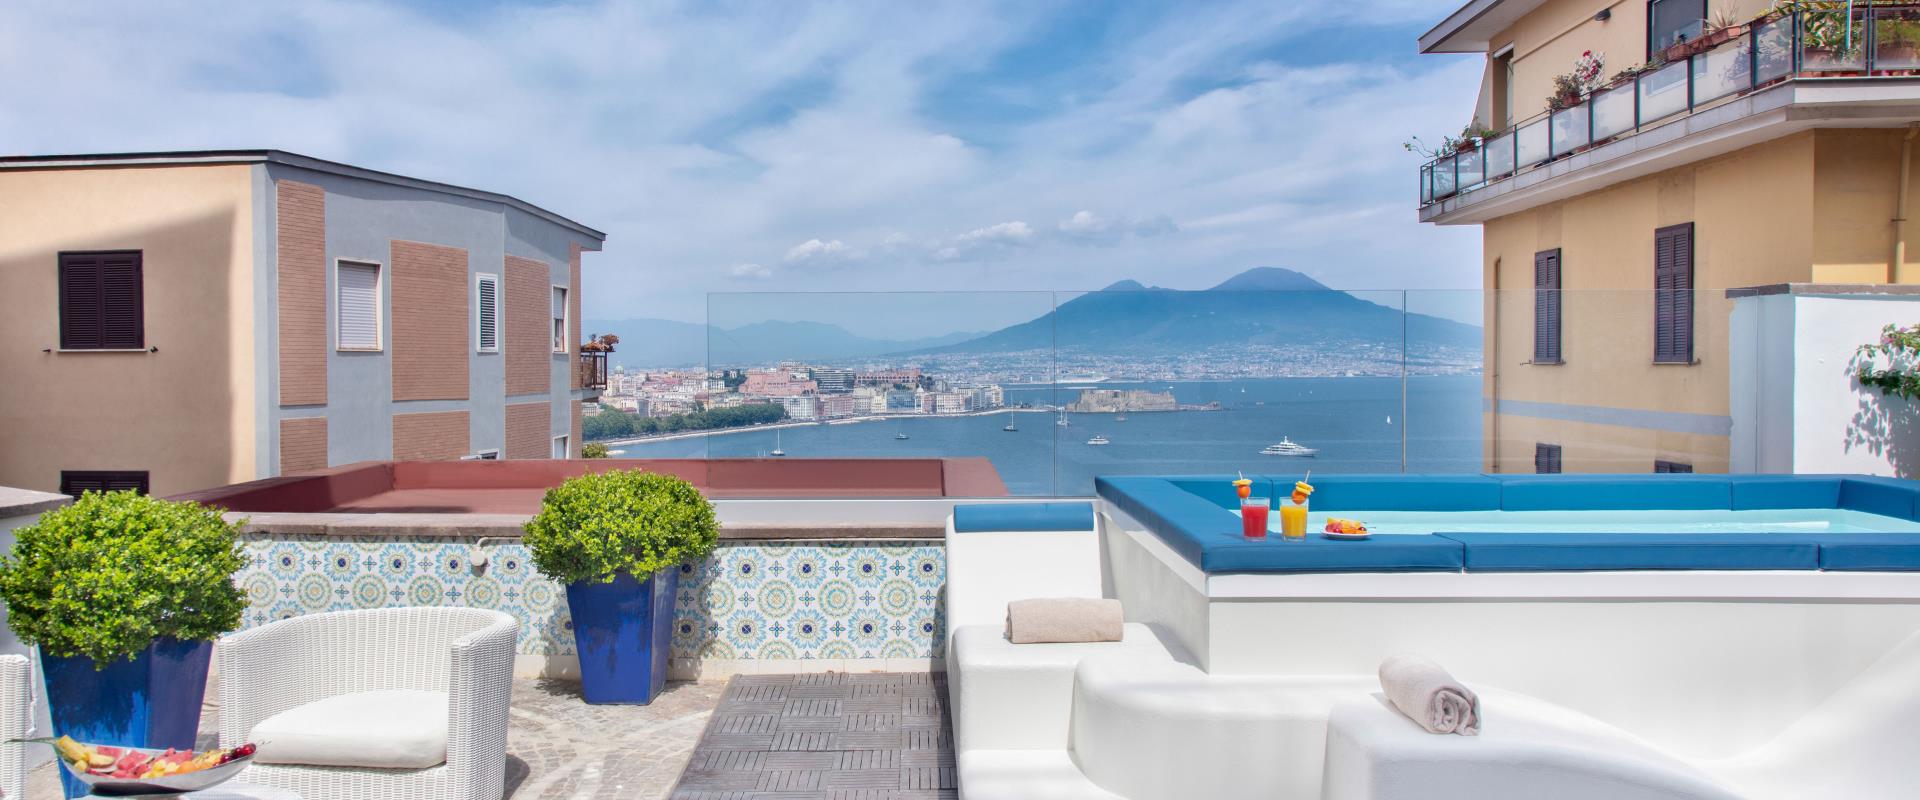 Um banho refrescante com vista para o Golfo de Nápoles